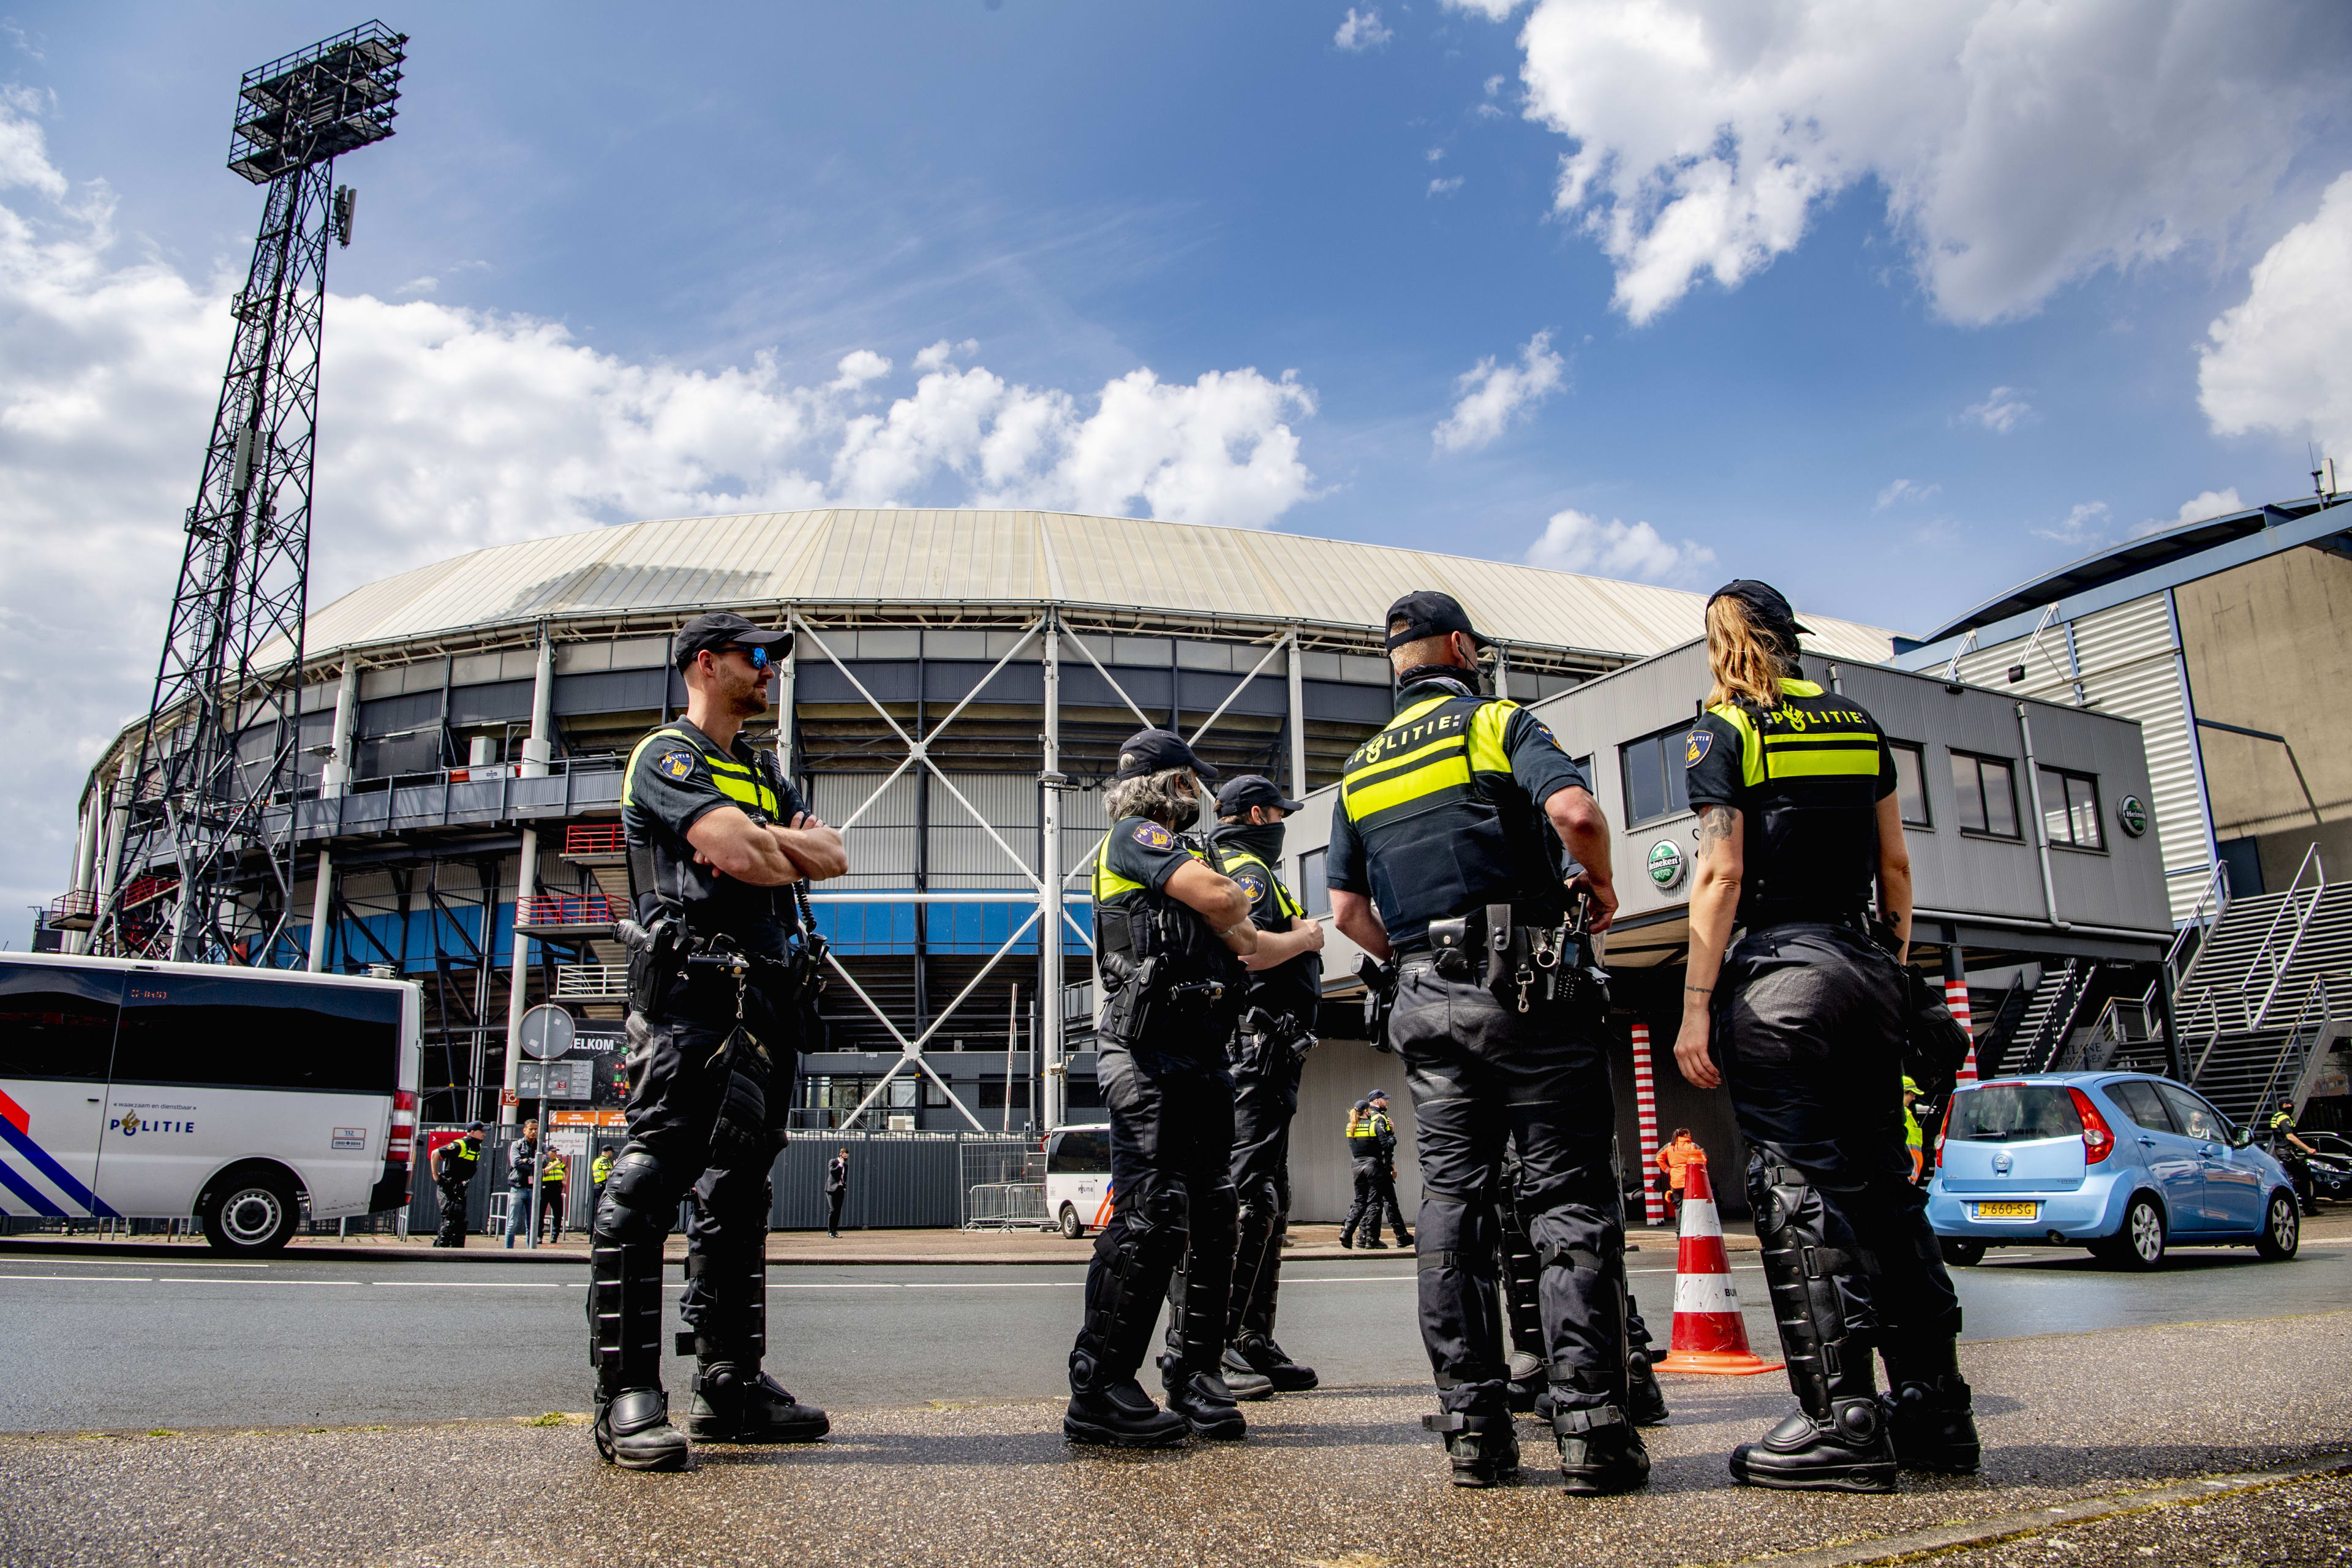 Politie treedt op tegen voetbalsupports voorafgaand aan bekerfinale in De Kuip